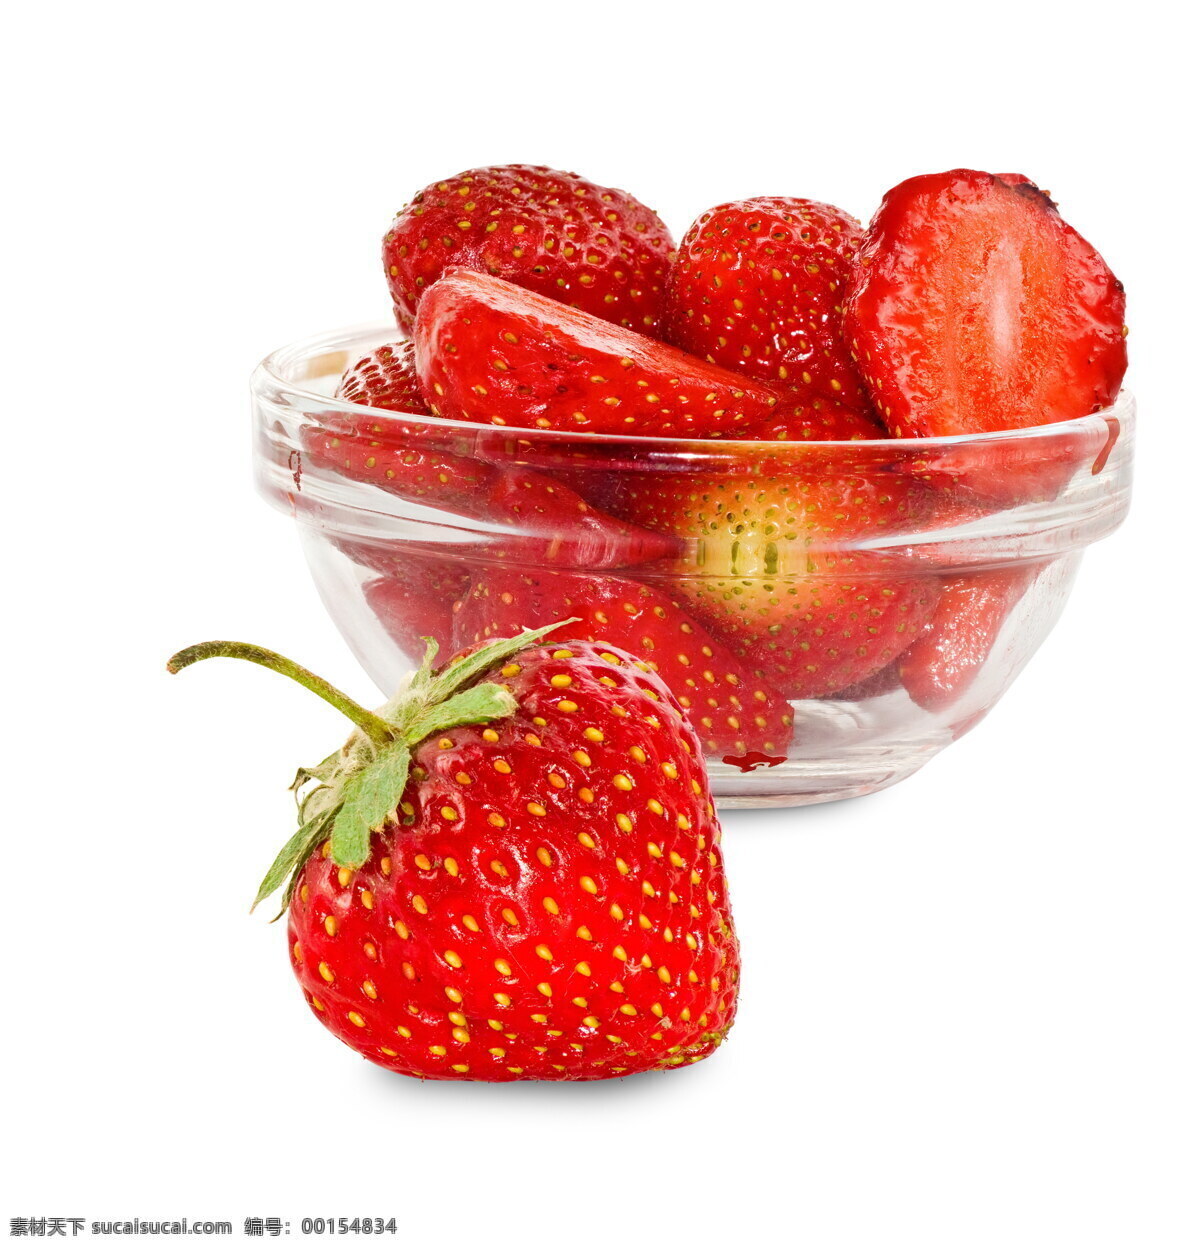 草莓 红草莓 红色 碗 玻璃碗 器皿 红色水果 果实 果子 新鲜 美味 多汁 美食 食物 食品 水果 蔬菜 果蔬 生物世界